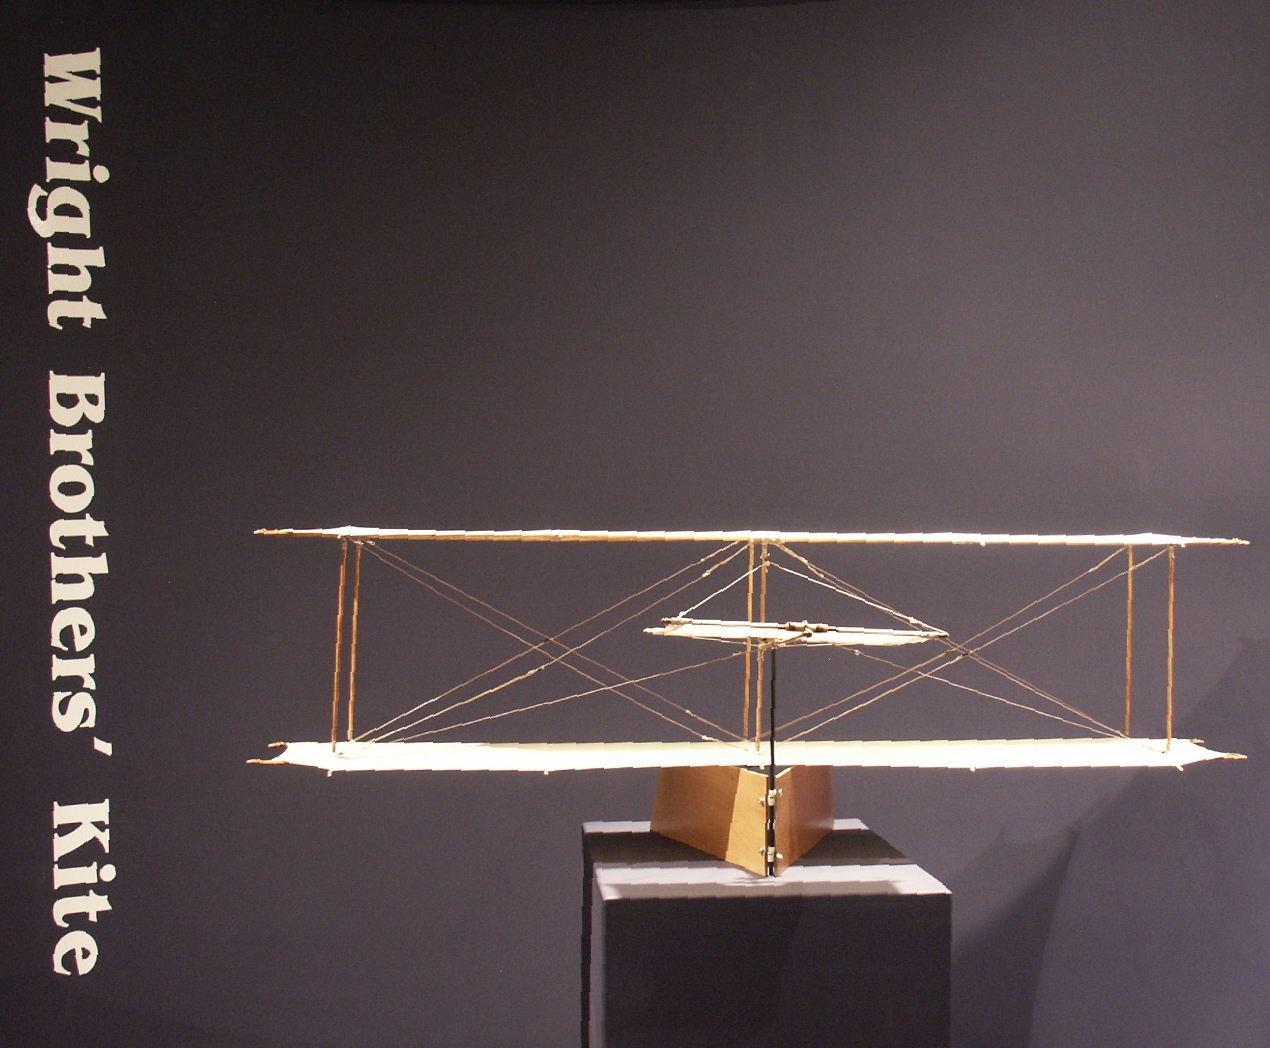 Wright Brothers' Kite